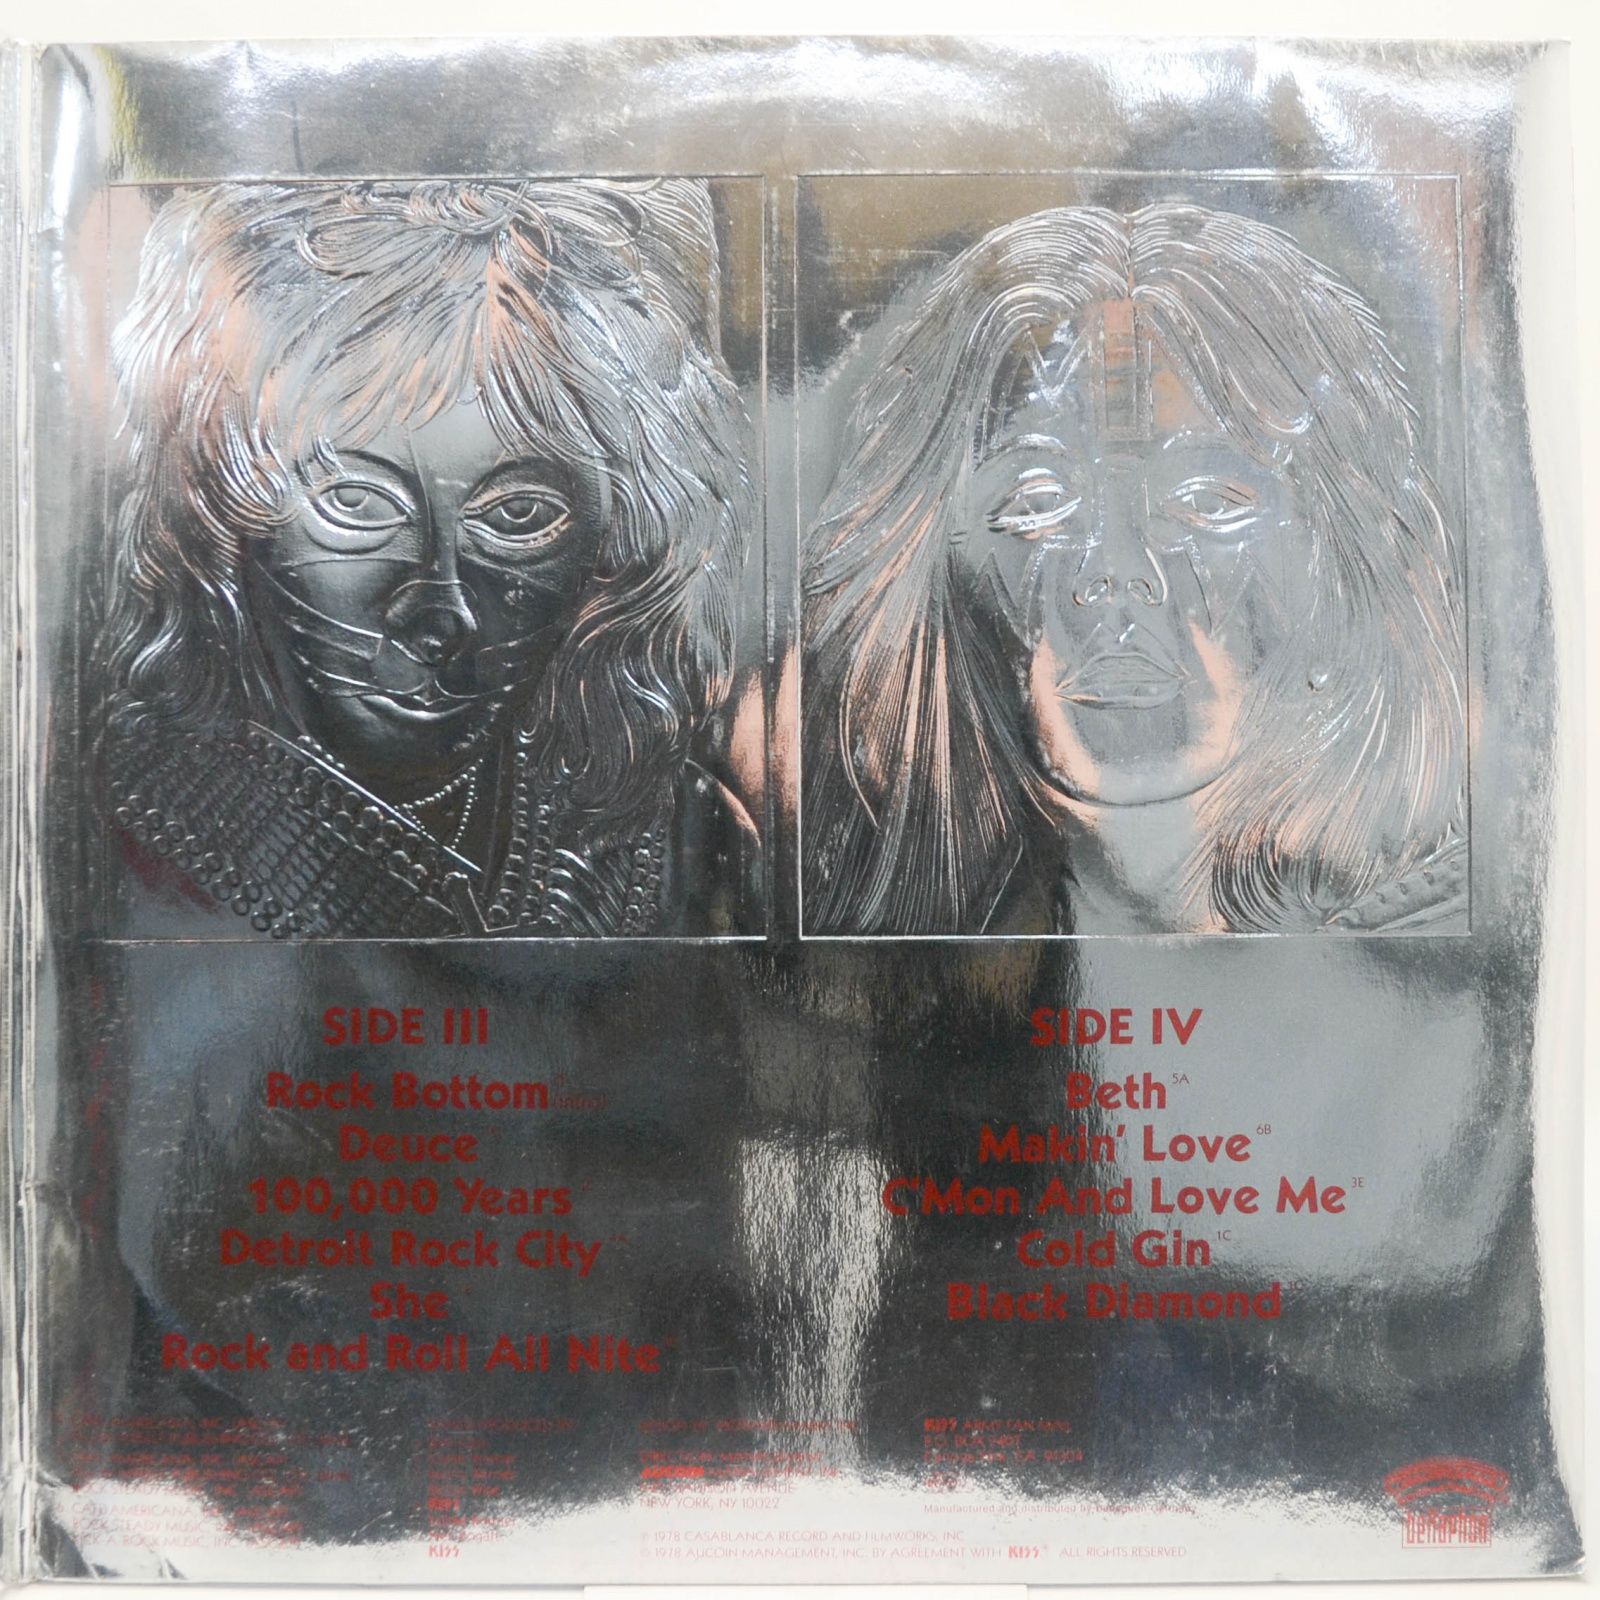 Kiss — Double Platinum (2LP), 1978